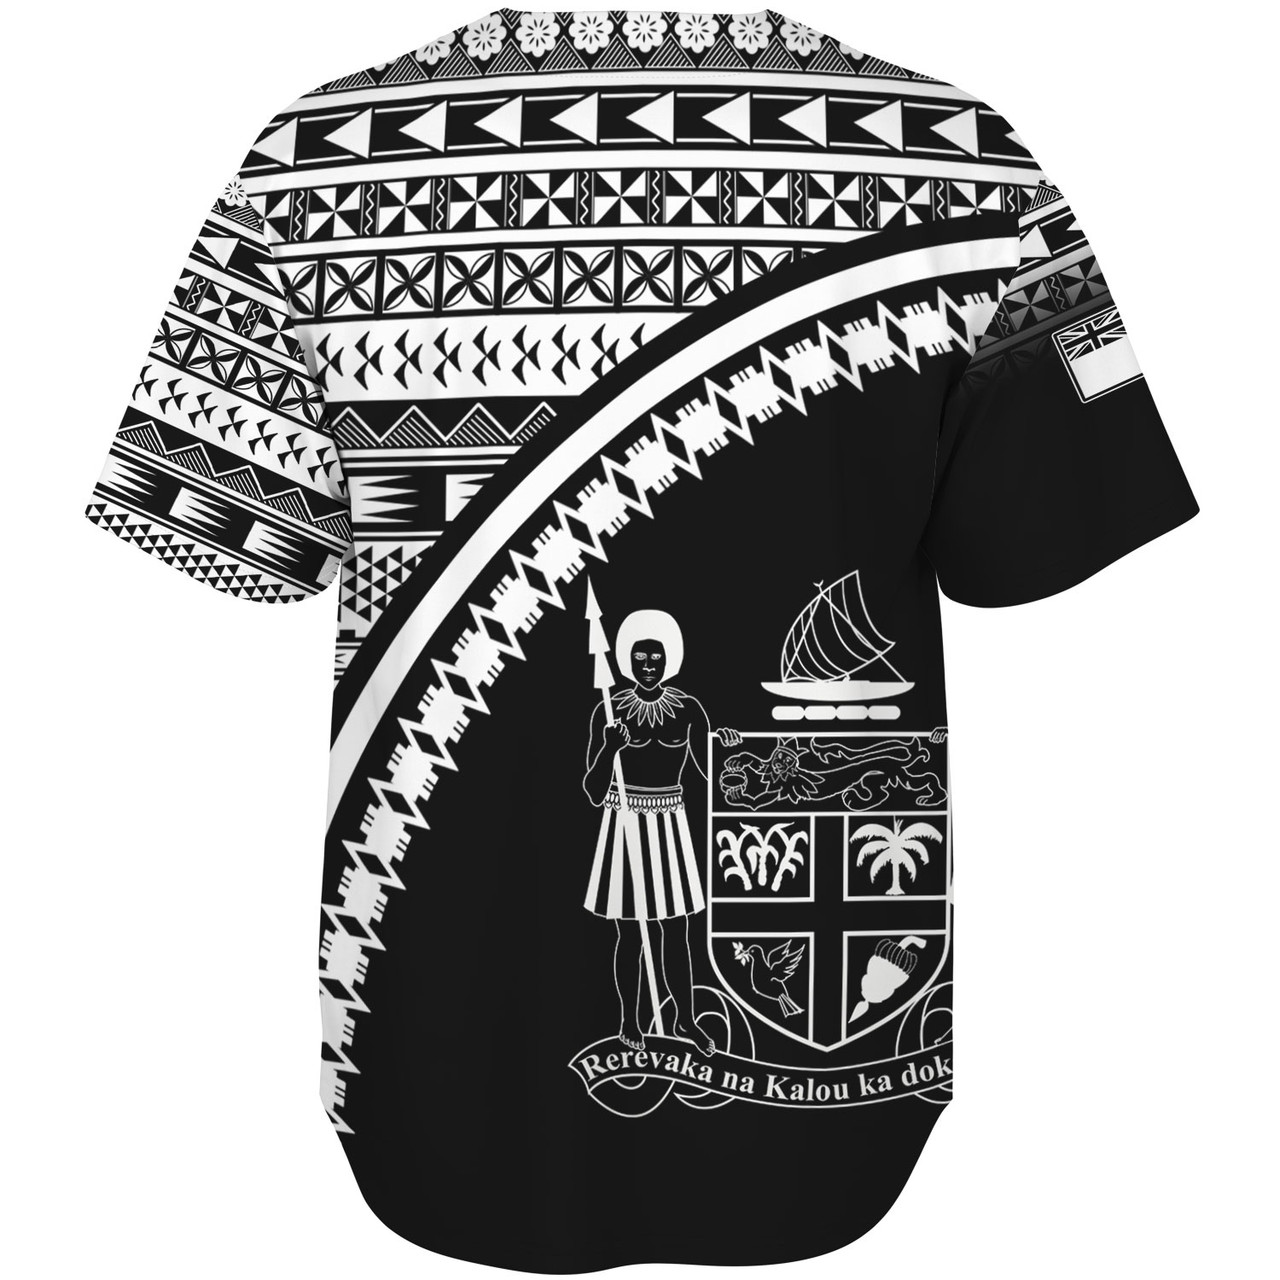 Fiji Custom Personalised Baseball Shirt Fijian Kesakesa Masi Patterns Curve Style